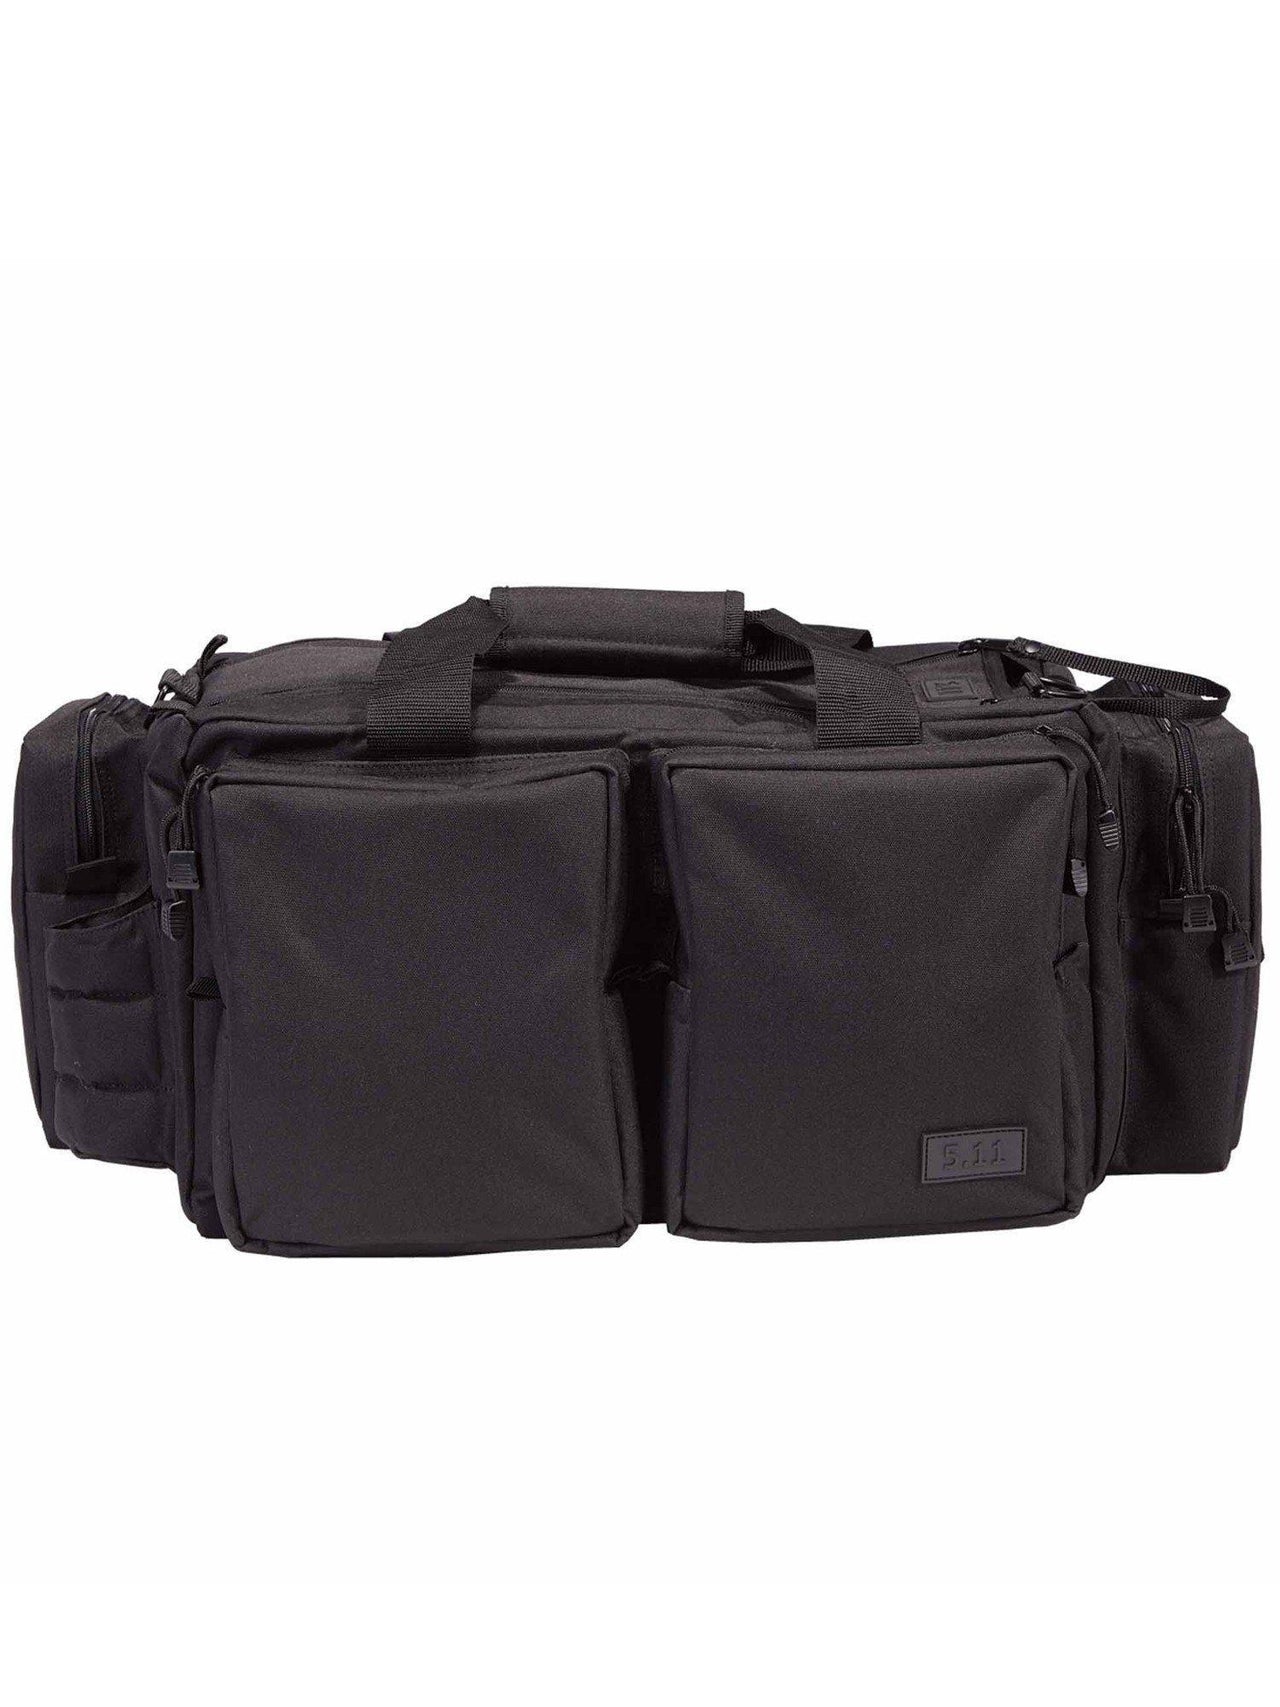 5.11 Tactical Range Ready Bag - TacSource